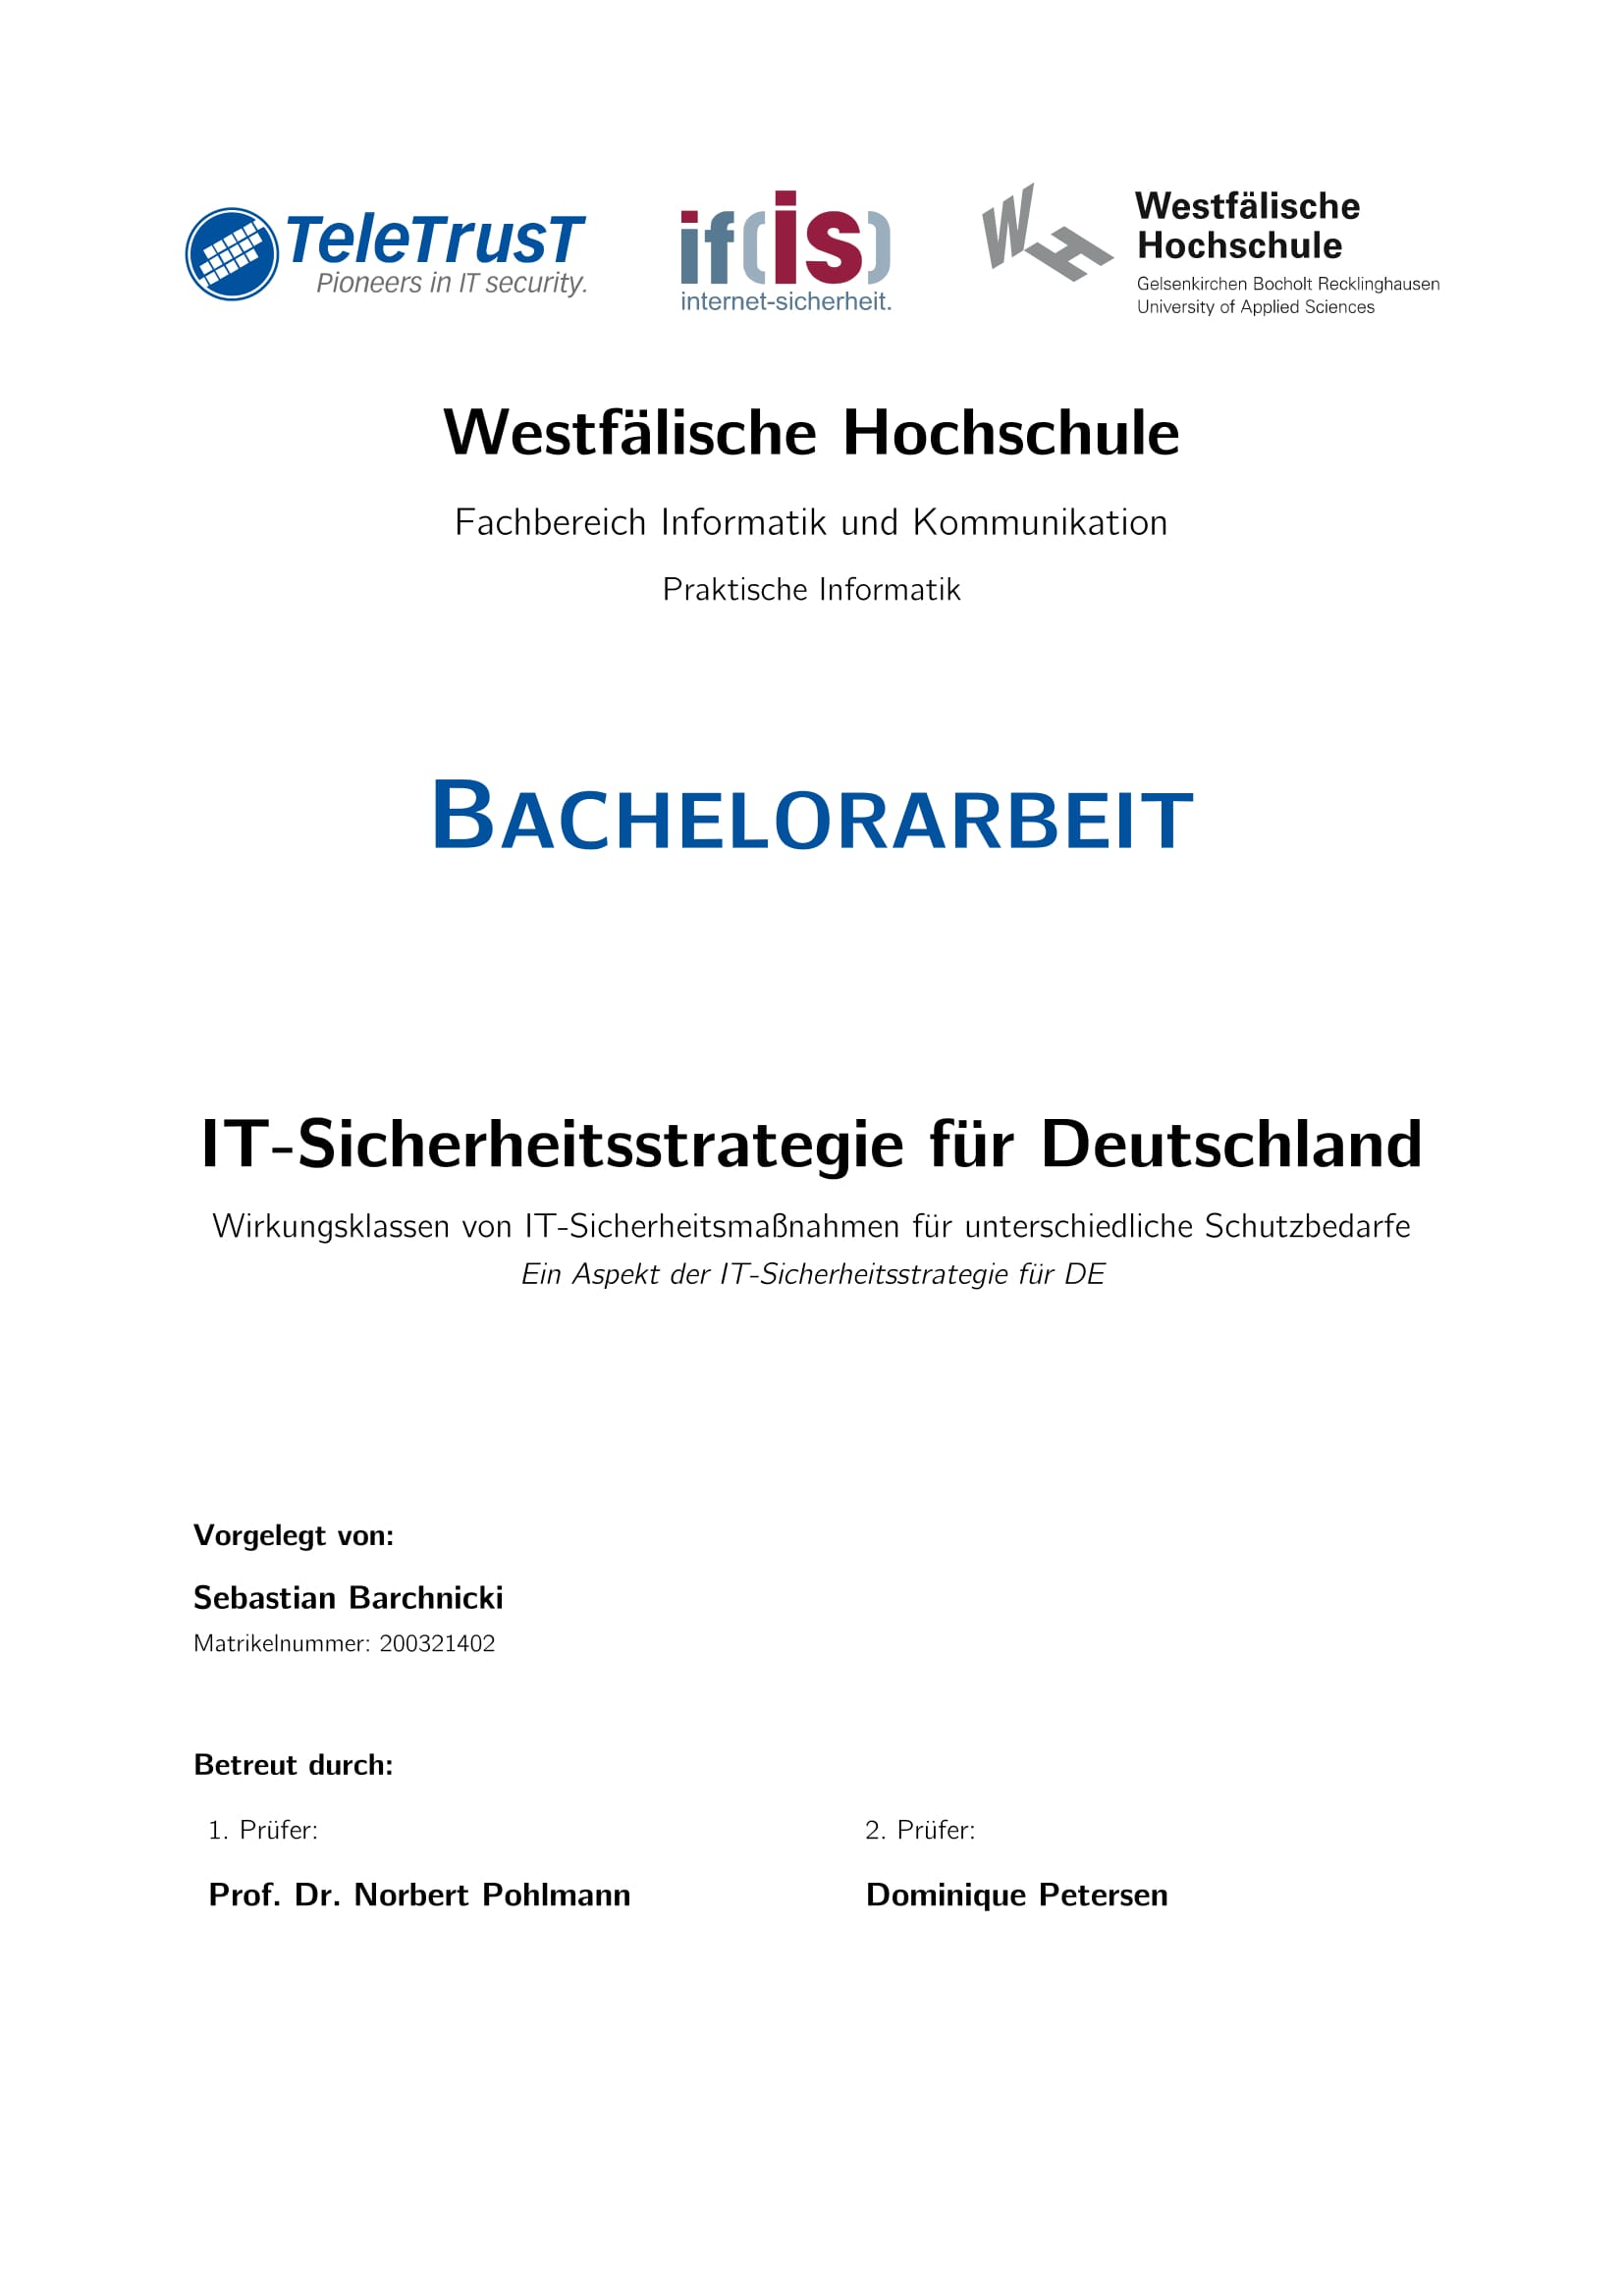 IT-Sicherheitsstrategie für Deutschland - Prof. Norbert Pohlmann 2015-1-1-1